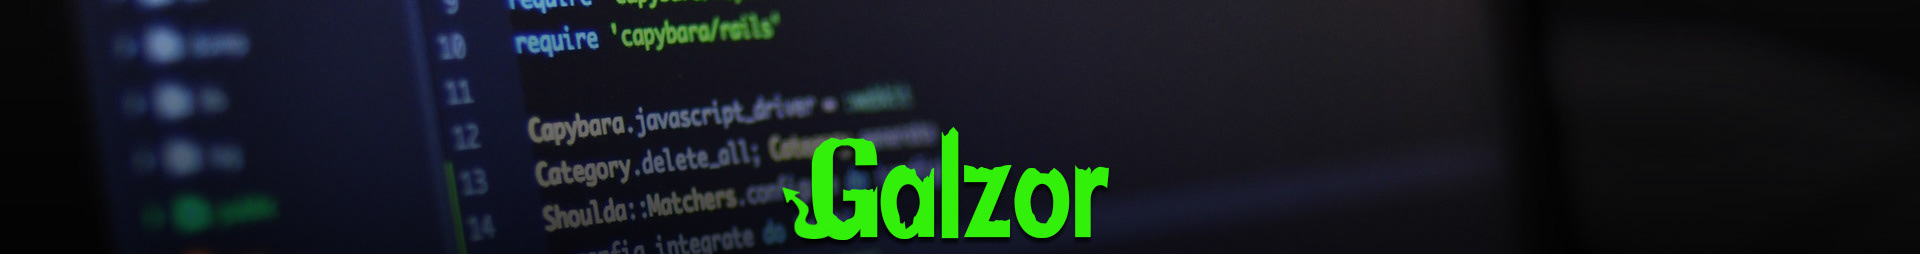 Amanz Galzor's profile banner